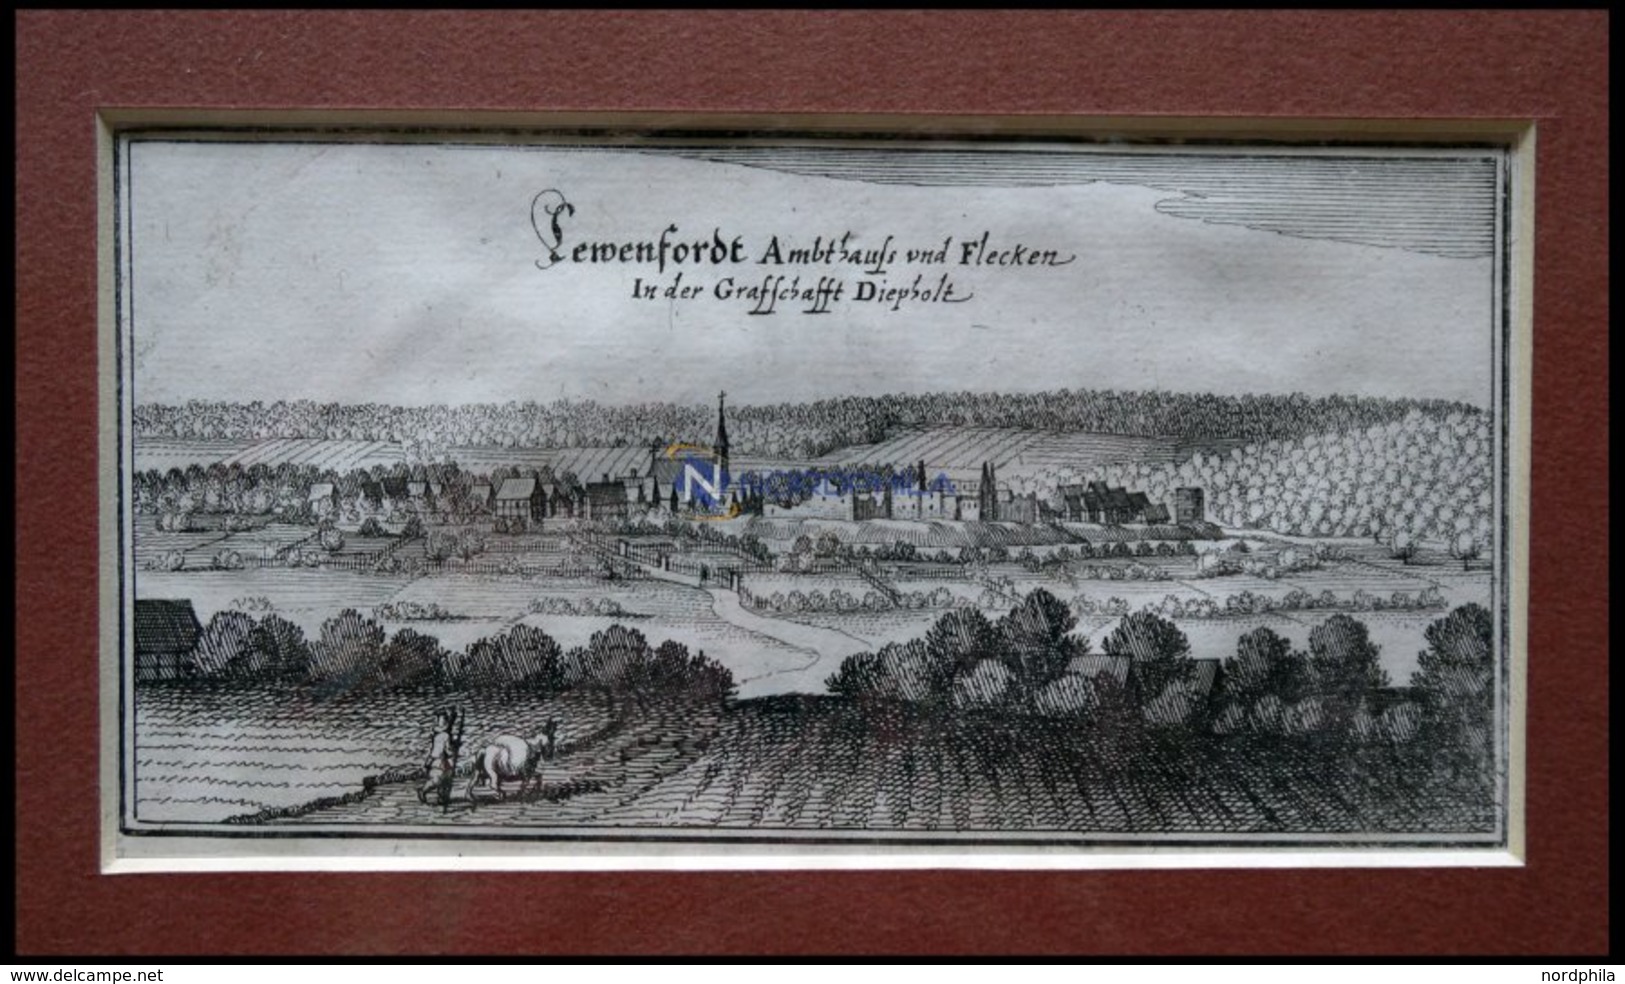 LEMFÖRDE, Gesamtansicht, Kupferstich Von Merian Um 1645 - Litografía